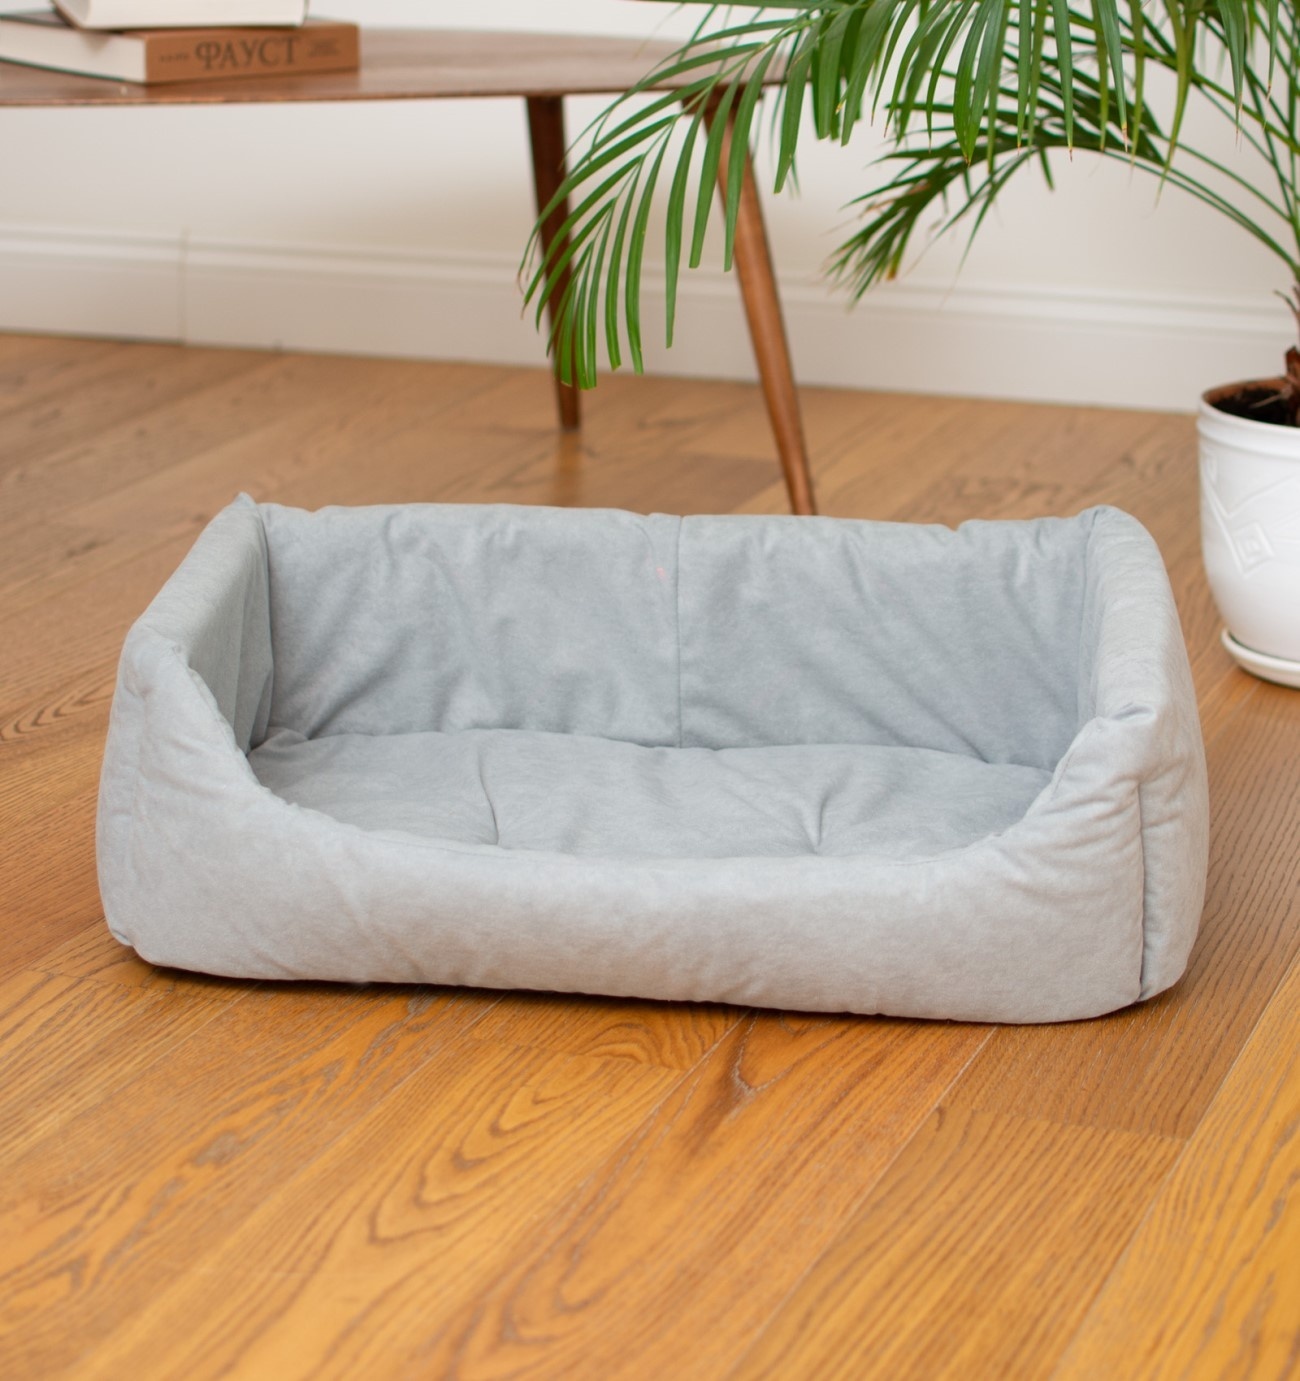 PETSHOP лежаки PETSHOP лежаки лежак прямоугольный с подушкой, серый (51х35х17 см) лежак кроватьtommy rombus 65 для собак и кошек коричневый ромб